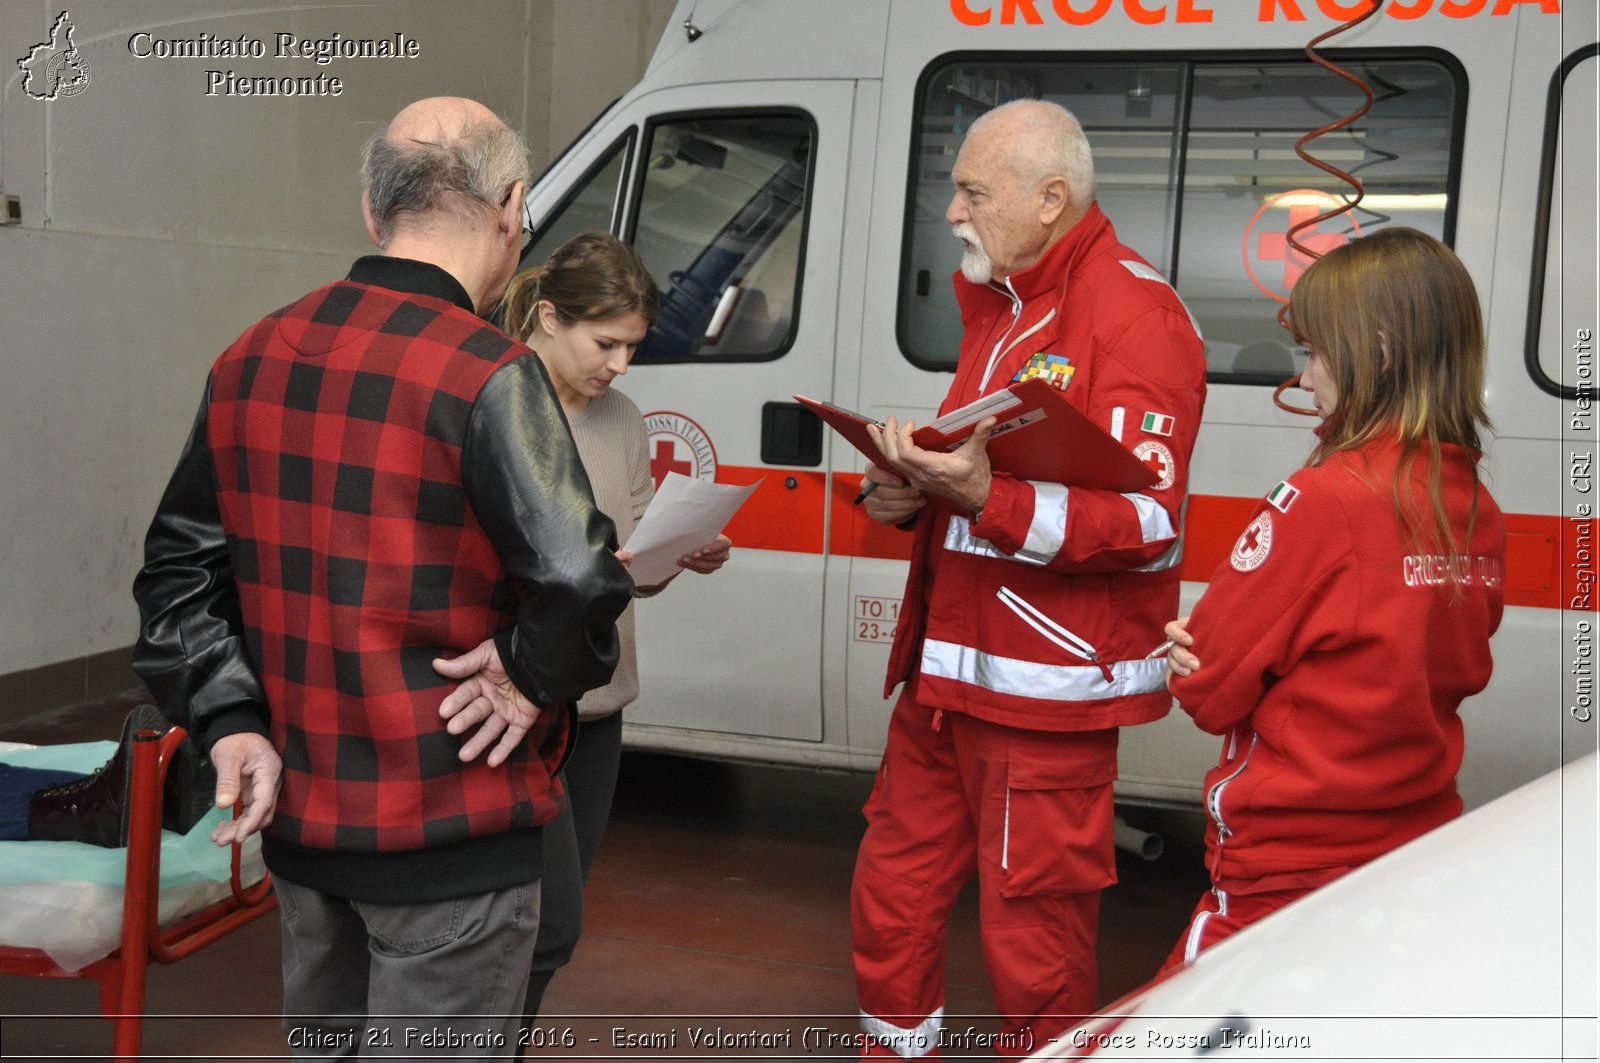 Chieri 21 Febbraio 2016 - Esami Volontari (Trasporto Infermi) - Croce Rossa Italiana- Comitato Regionale del Piemonte